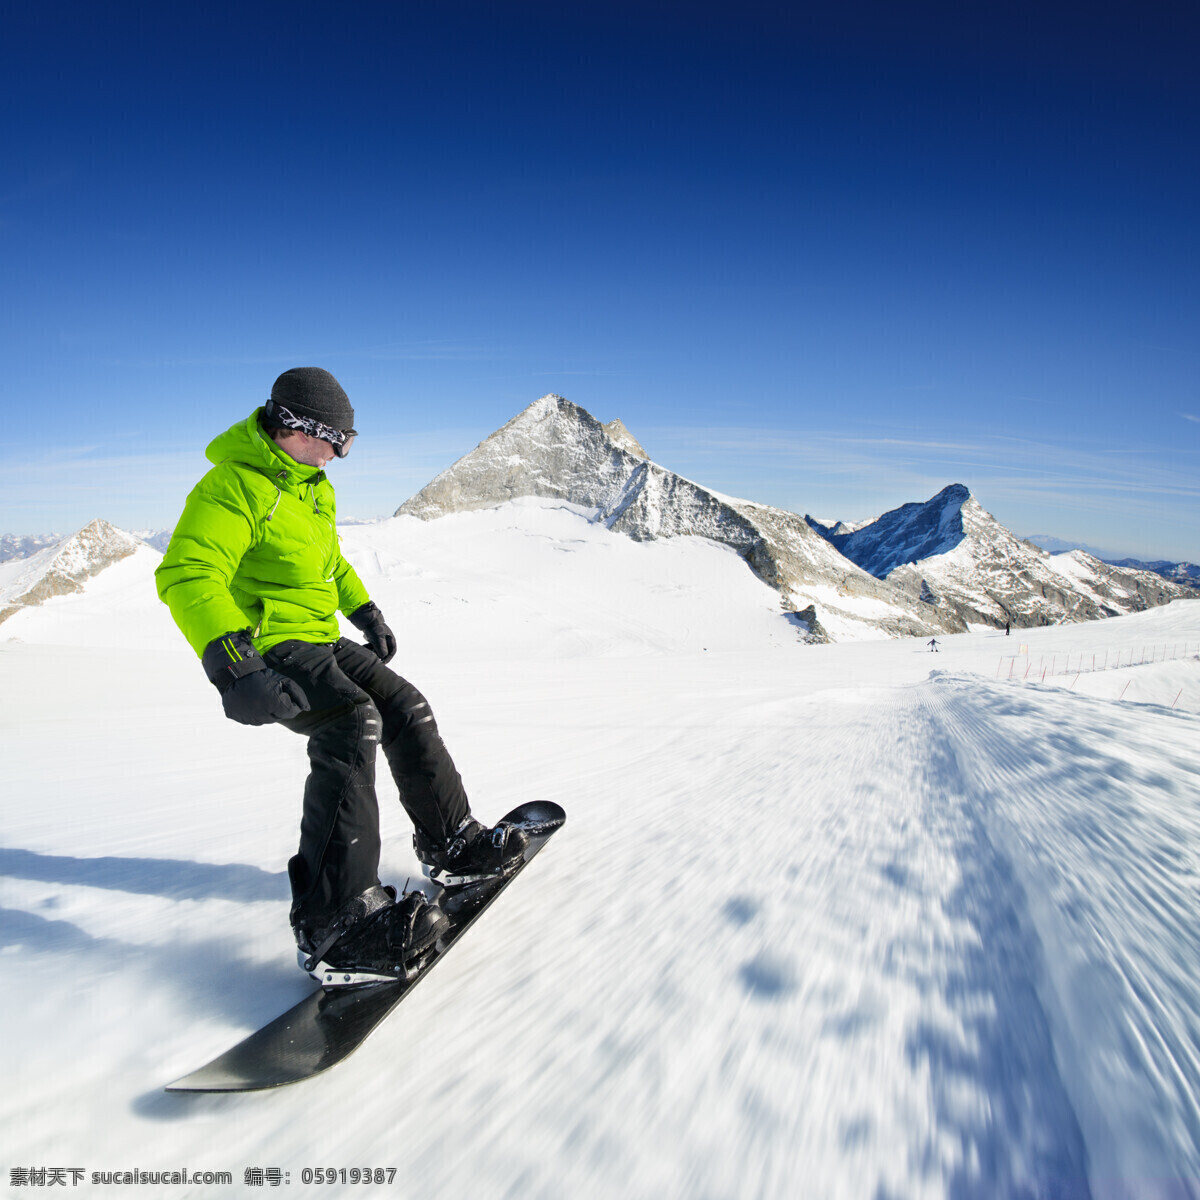 向下 去 滑雪 运动员 快速 高山 雪山 运动 雪地 雪花 滑雪板 户外运动 其他类别 生活百科 白色